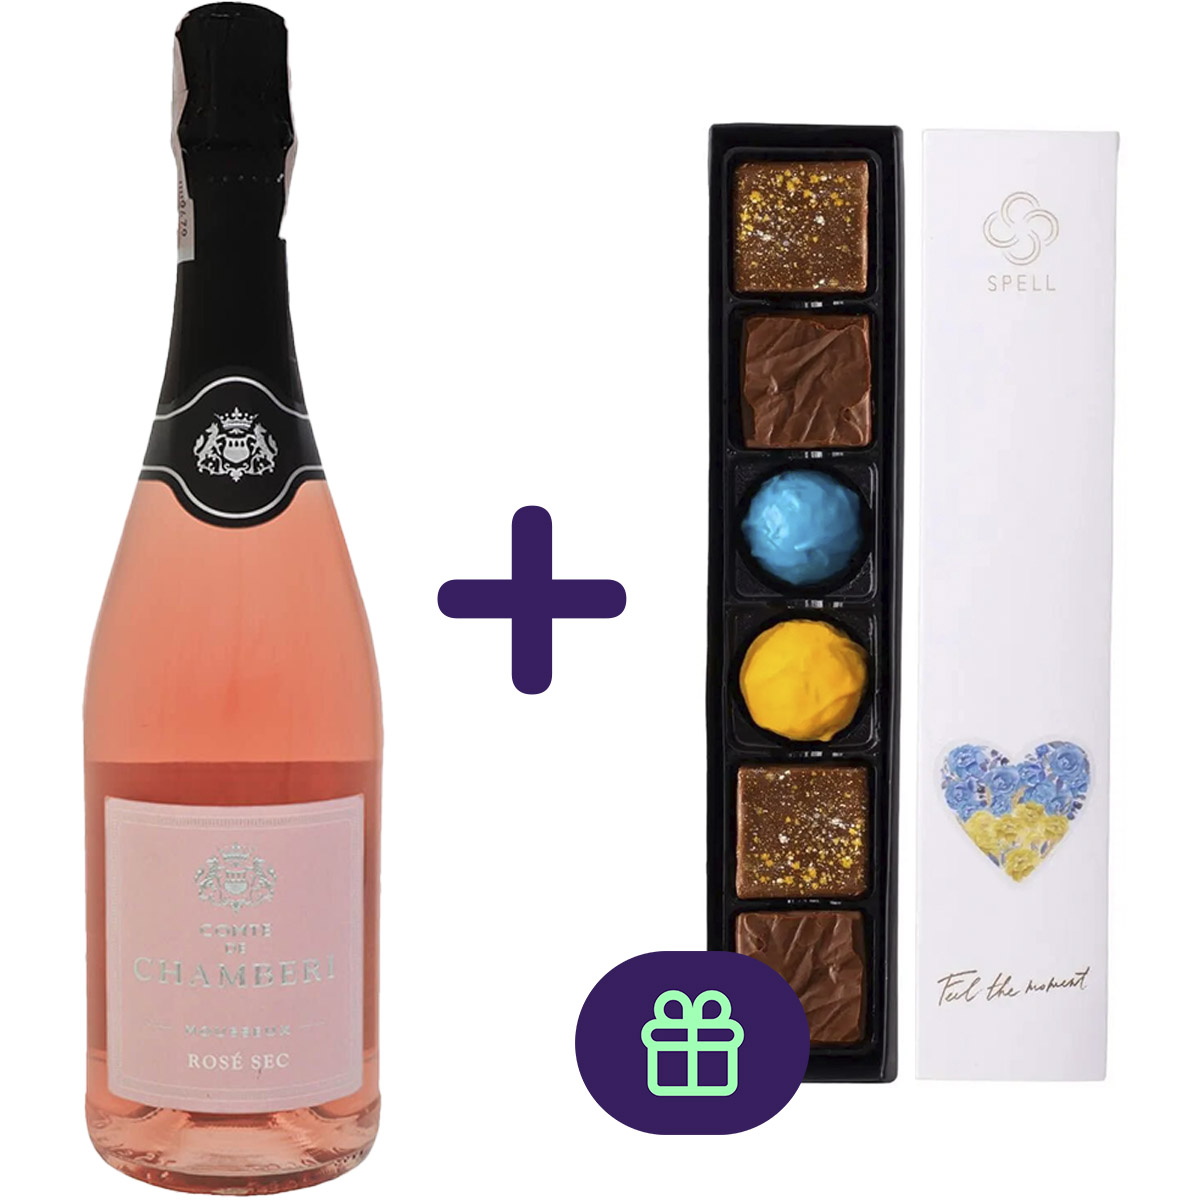 Вино игристое Comte de Chamberi Rose розовое сухое 10.5% 0.75 л + Набор шоколадных конфет Spell Сердце 76 г - фото 2